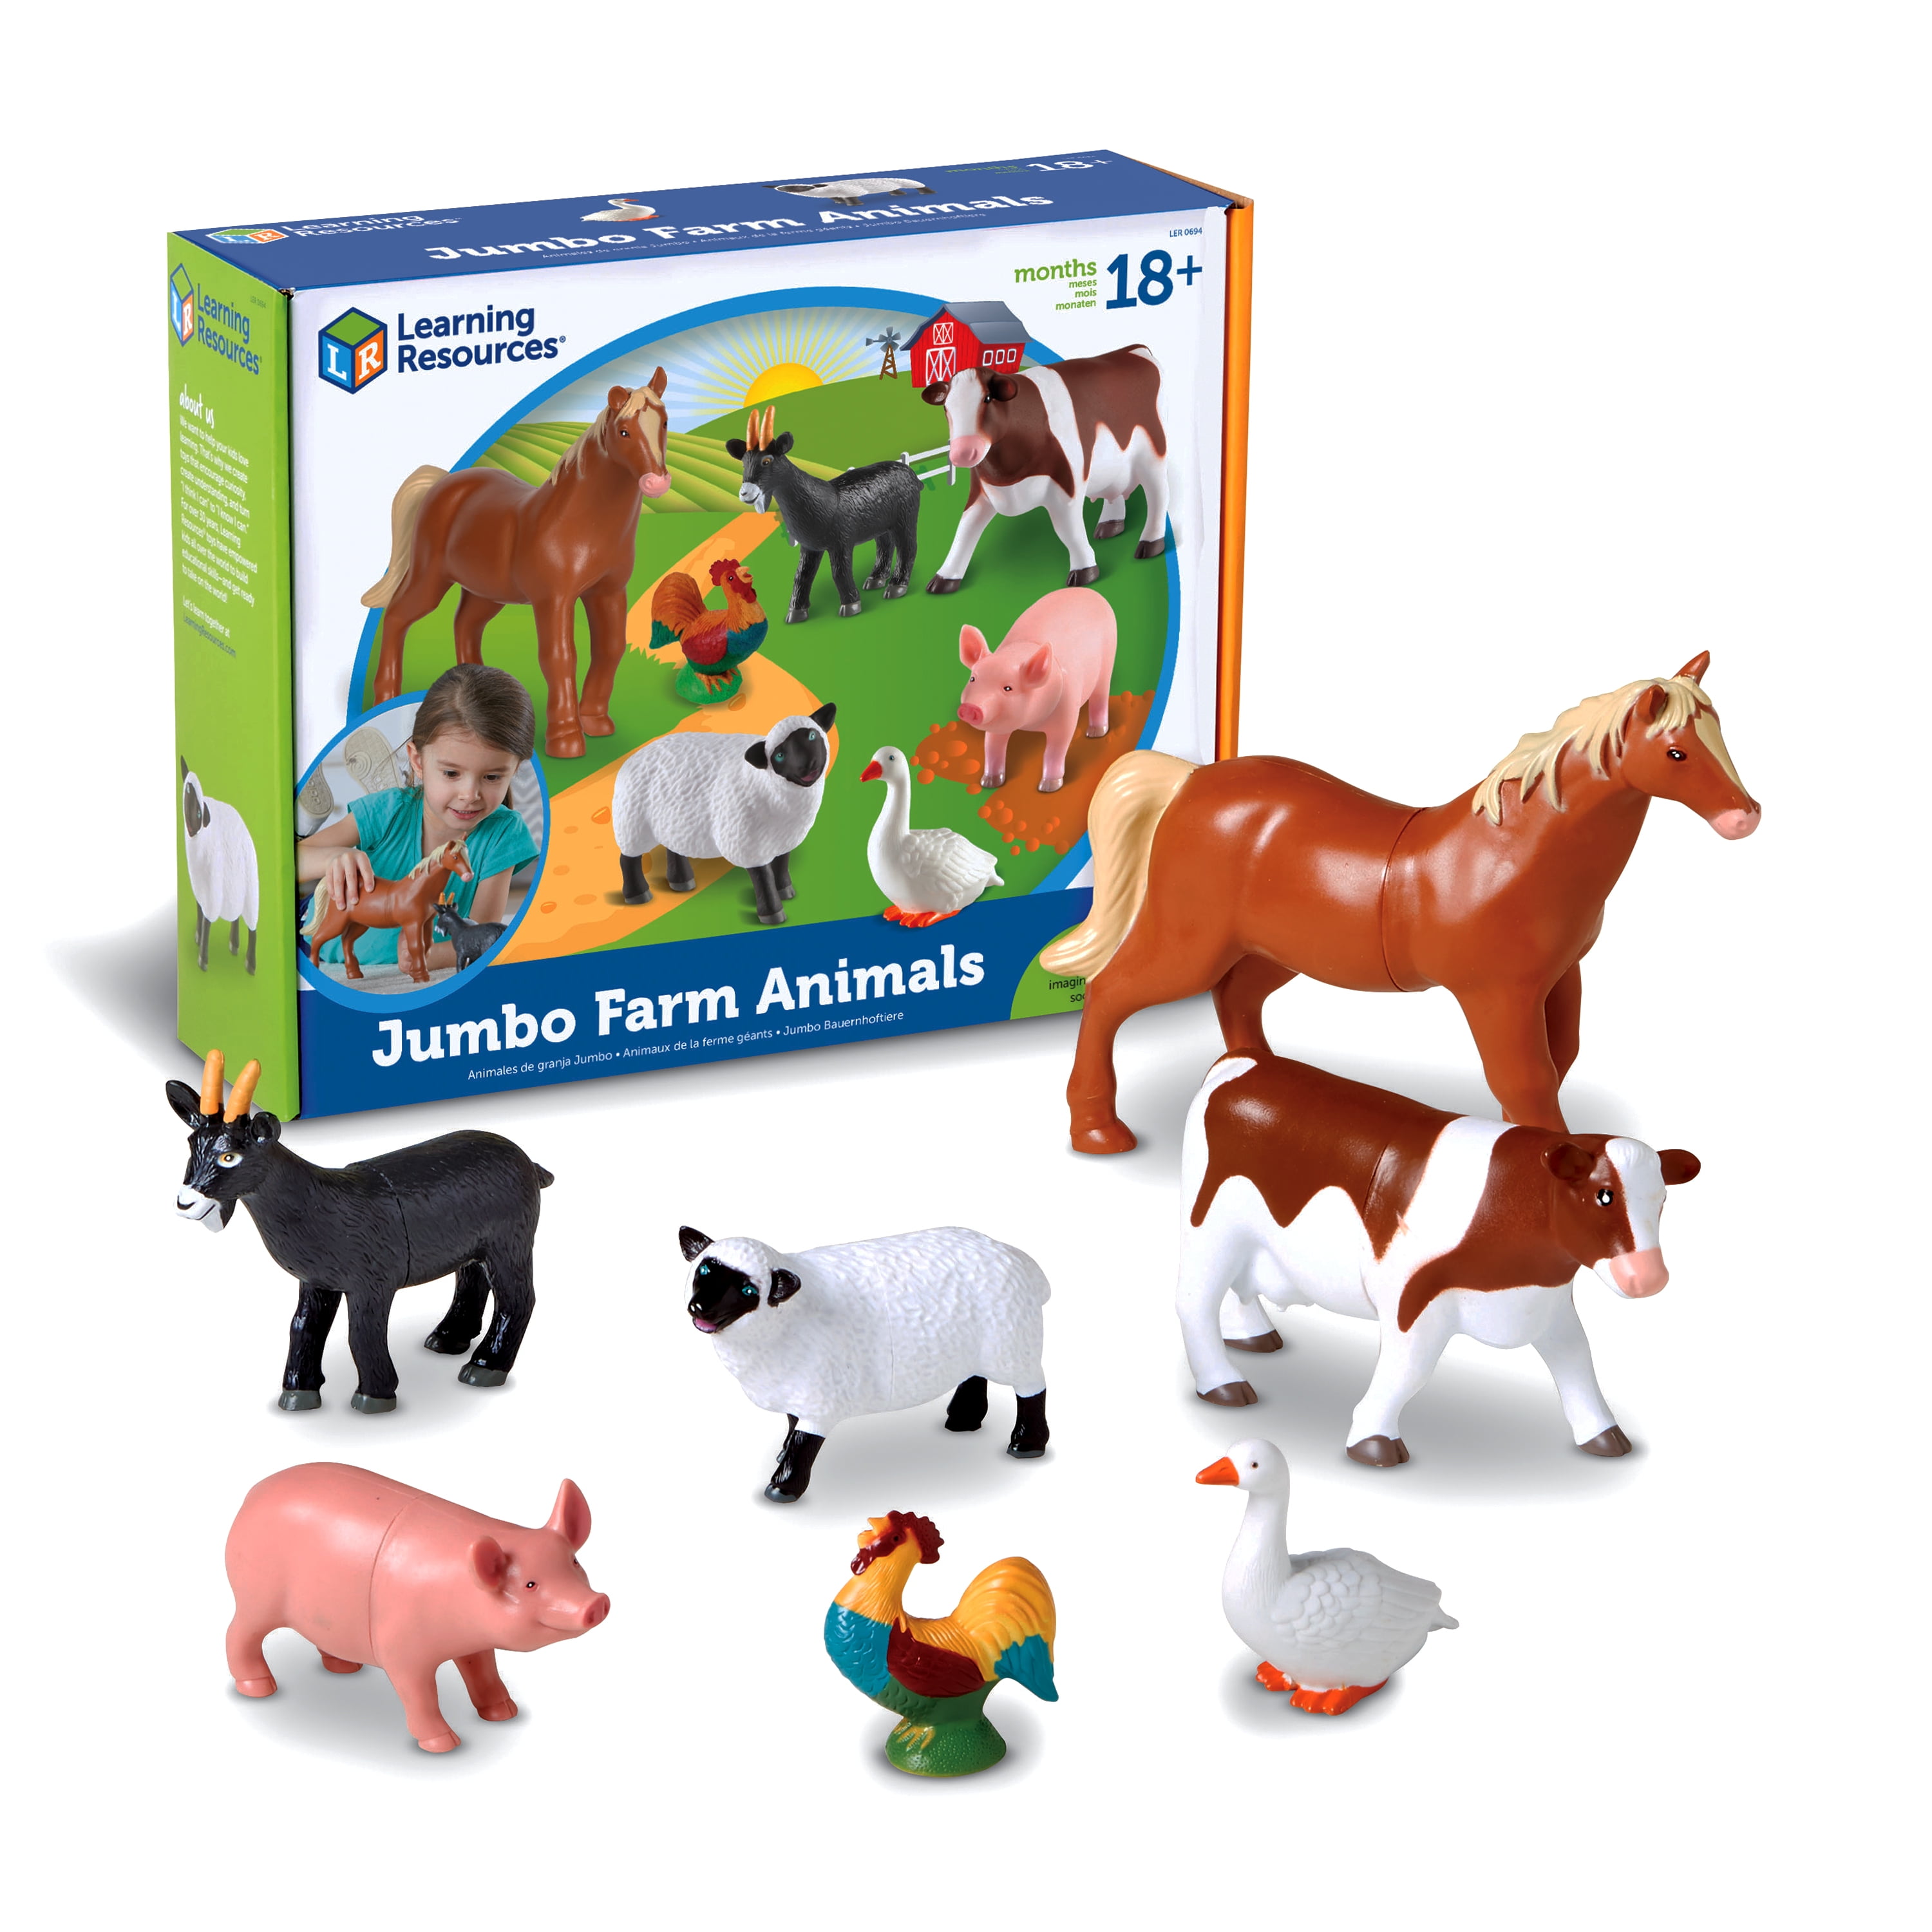 Details about   Schleich Farm World Animals Figures Set Toy 42386 5pk 